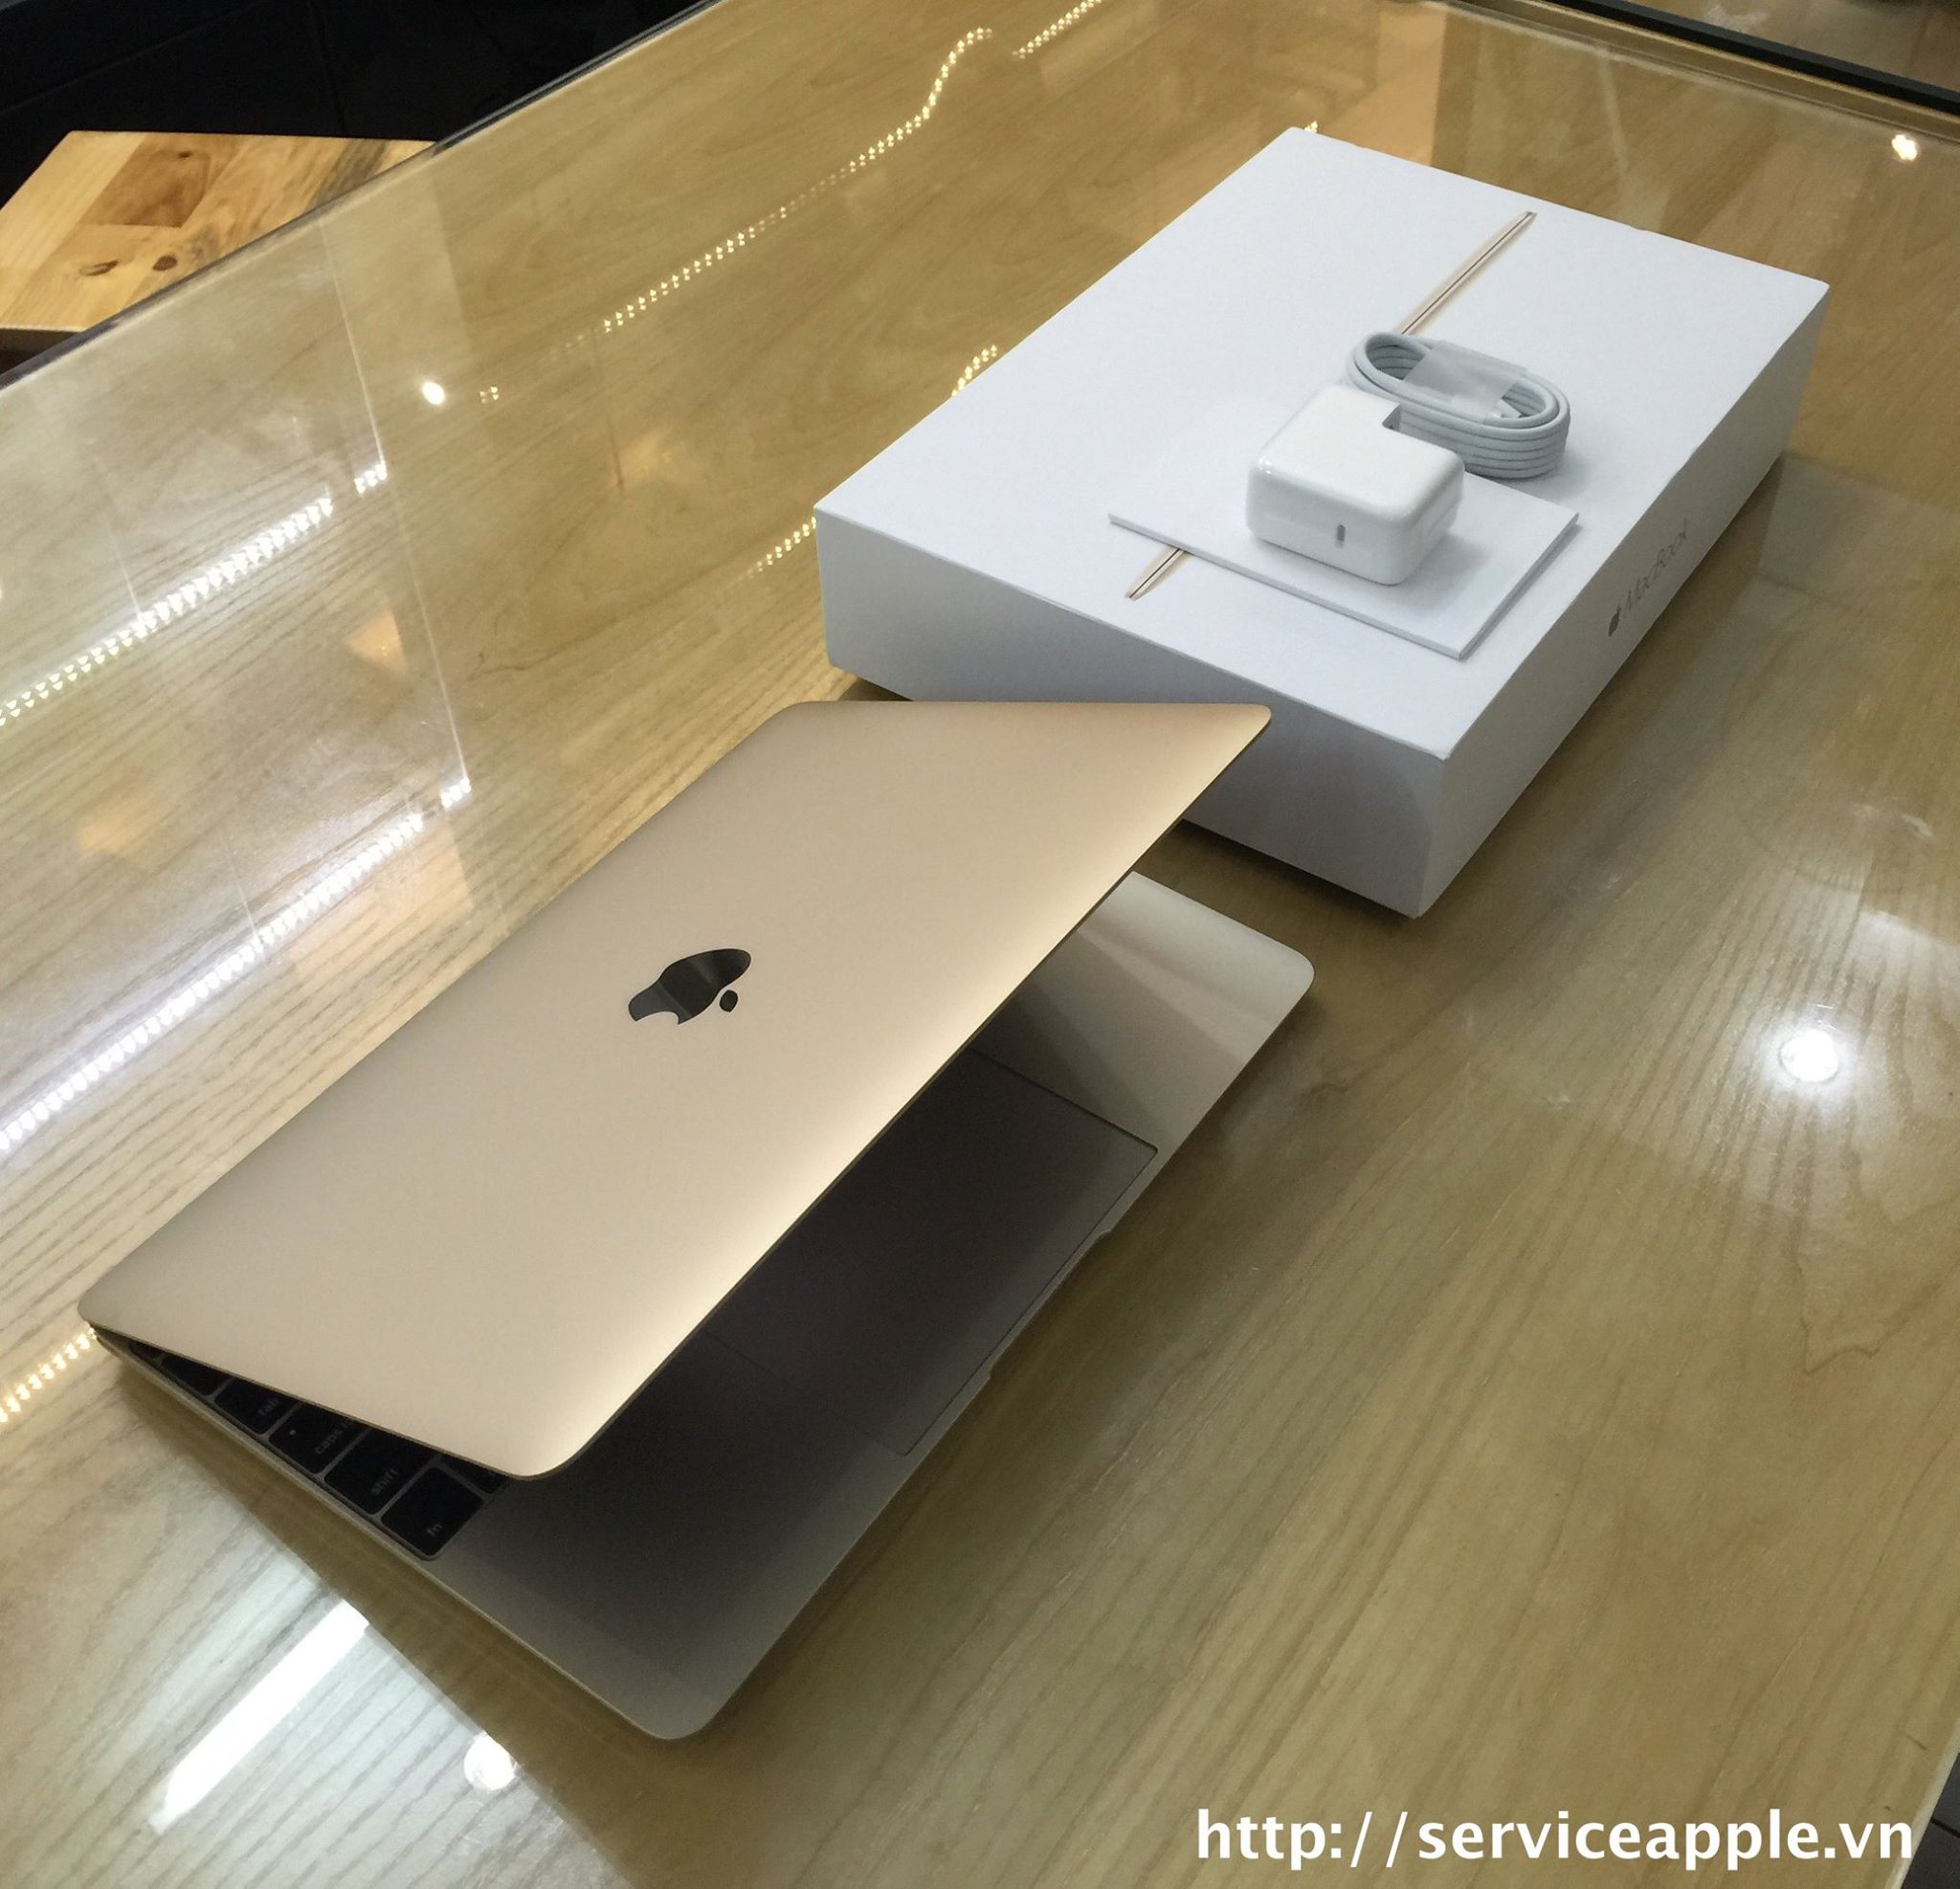 The New MacBook 12 inch GOLD - MK4N2_2.jpg